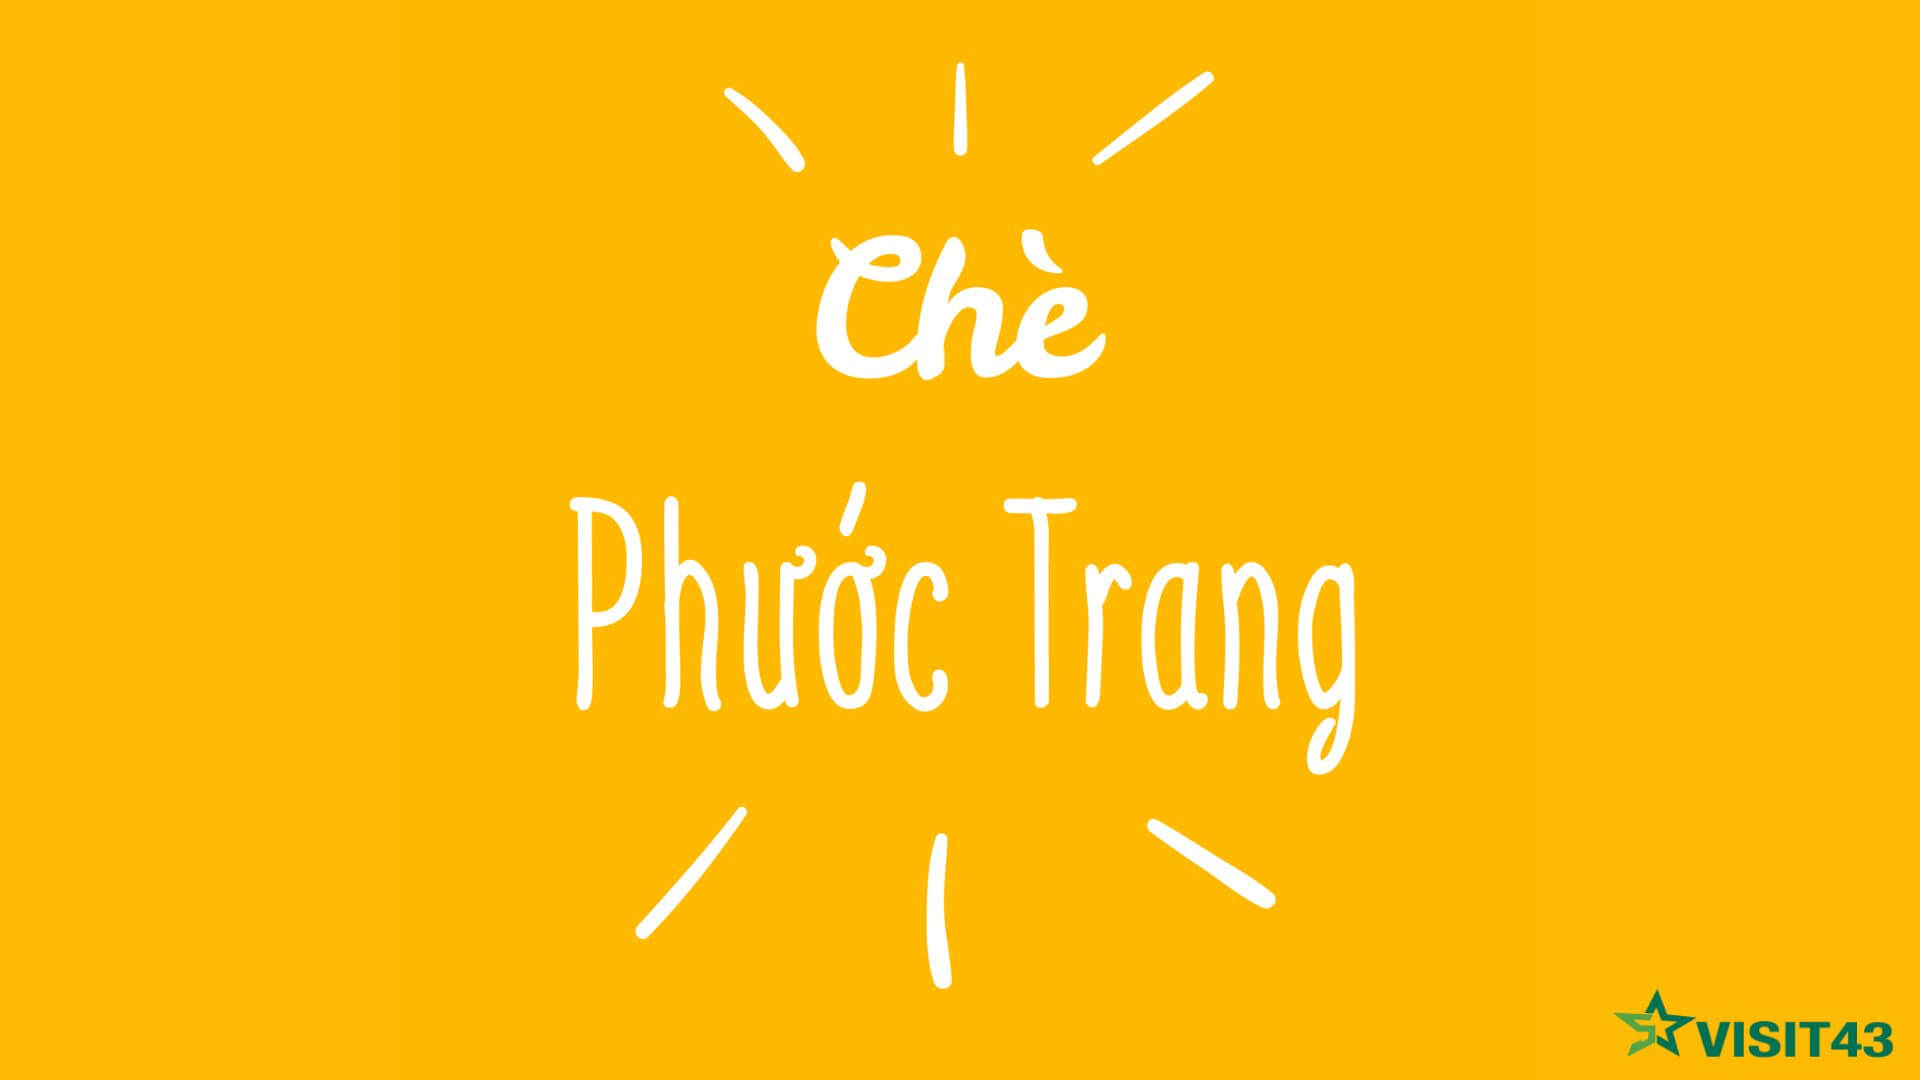 Quán chè Phước Trang